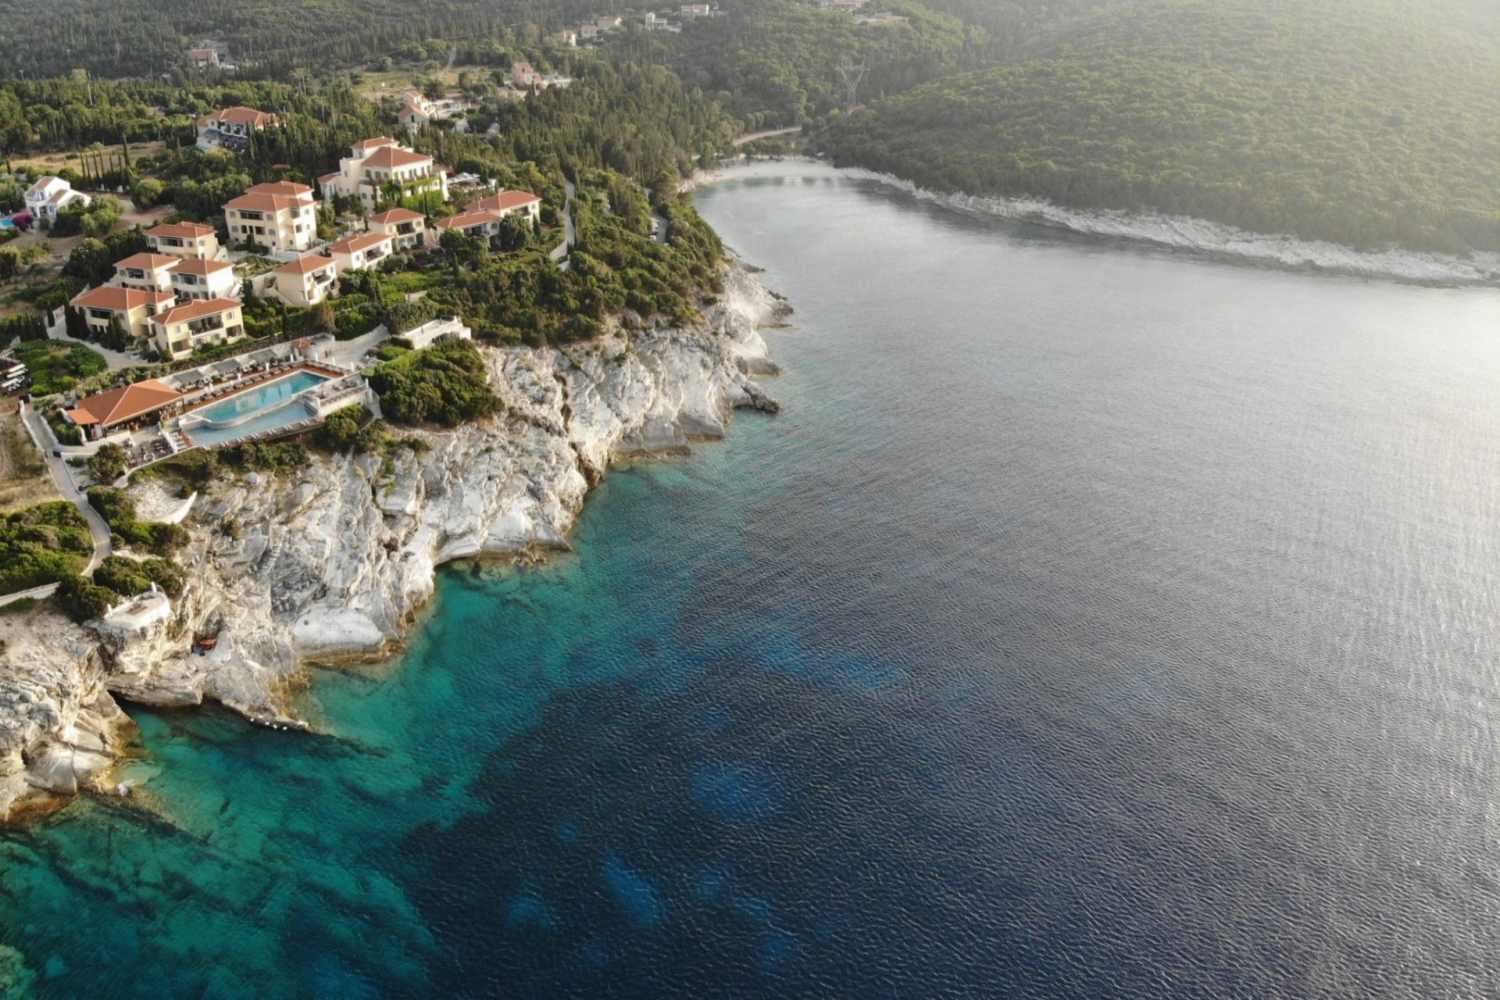 Emelisse Nature Resort, Ionian Islands - Greece